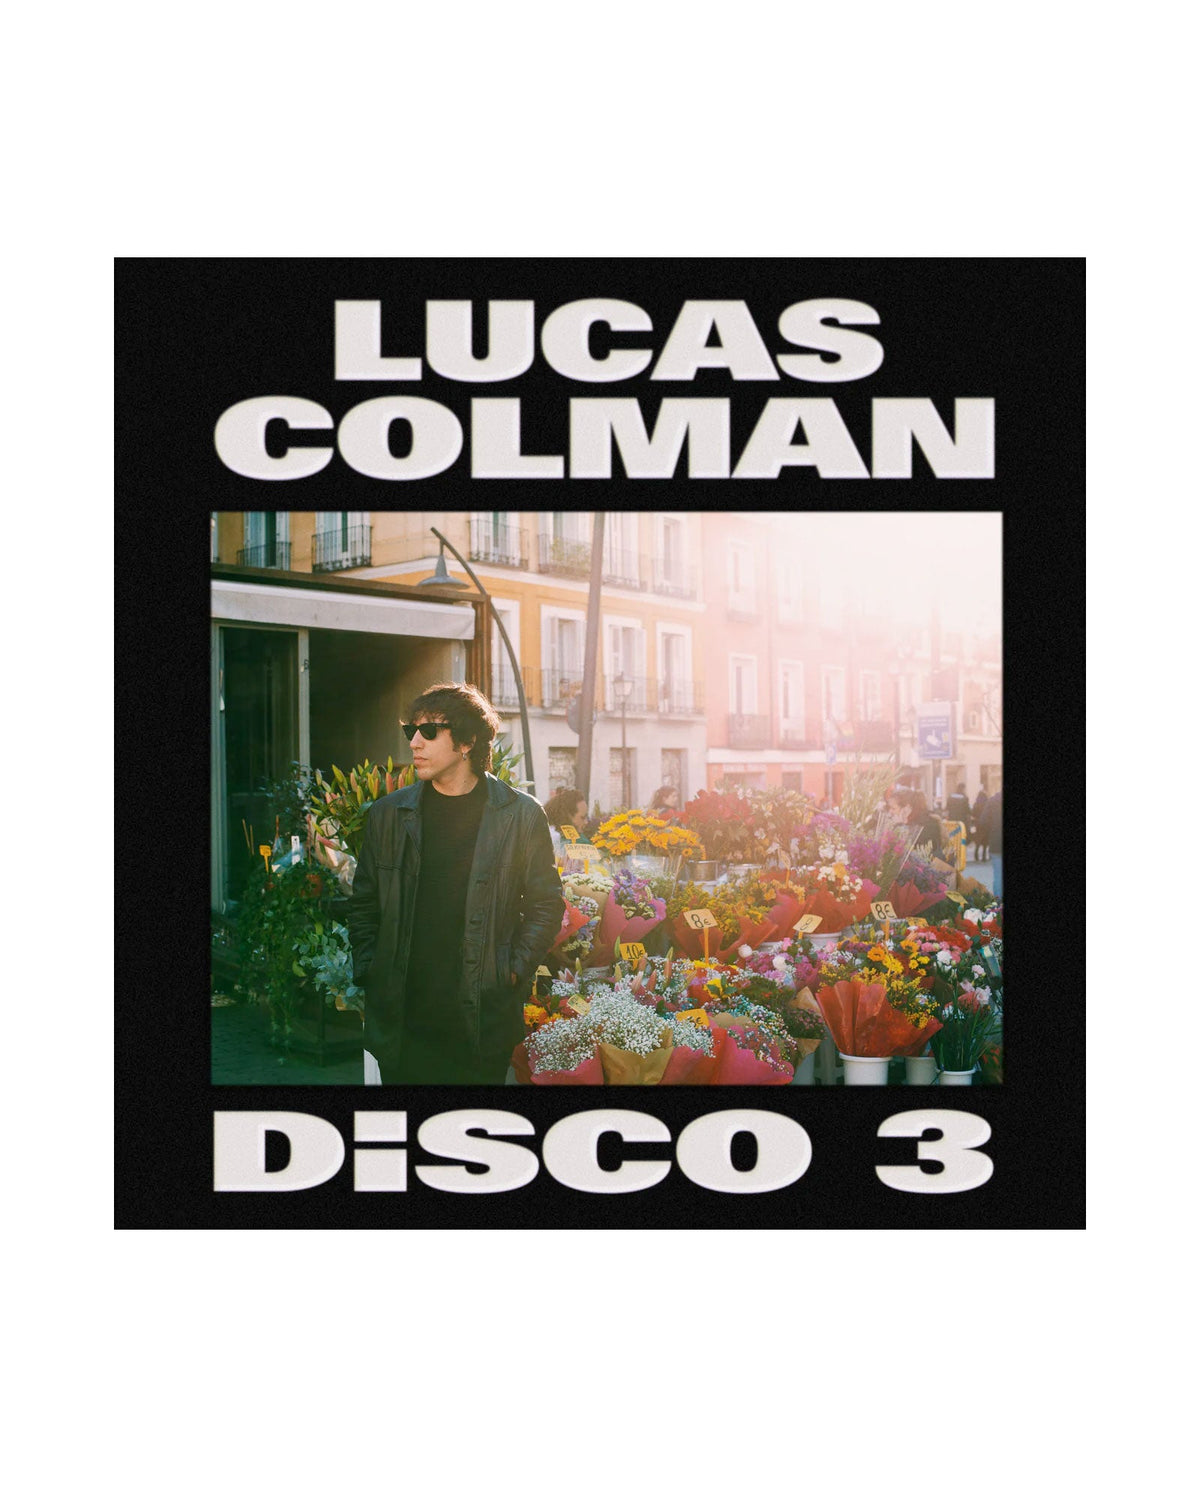 Lucas Colman - CD "Disco 3" - D2fy · Rocktud - Metales Preciosos